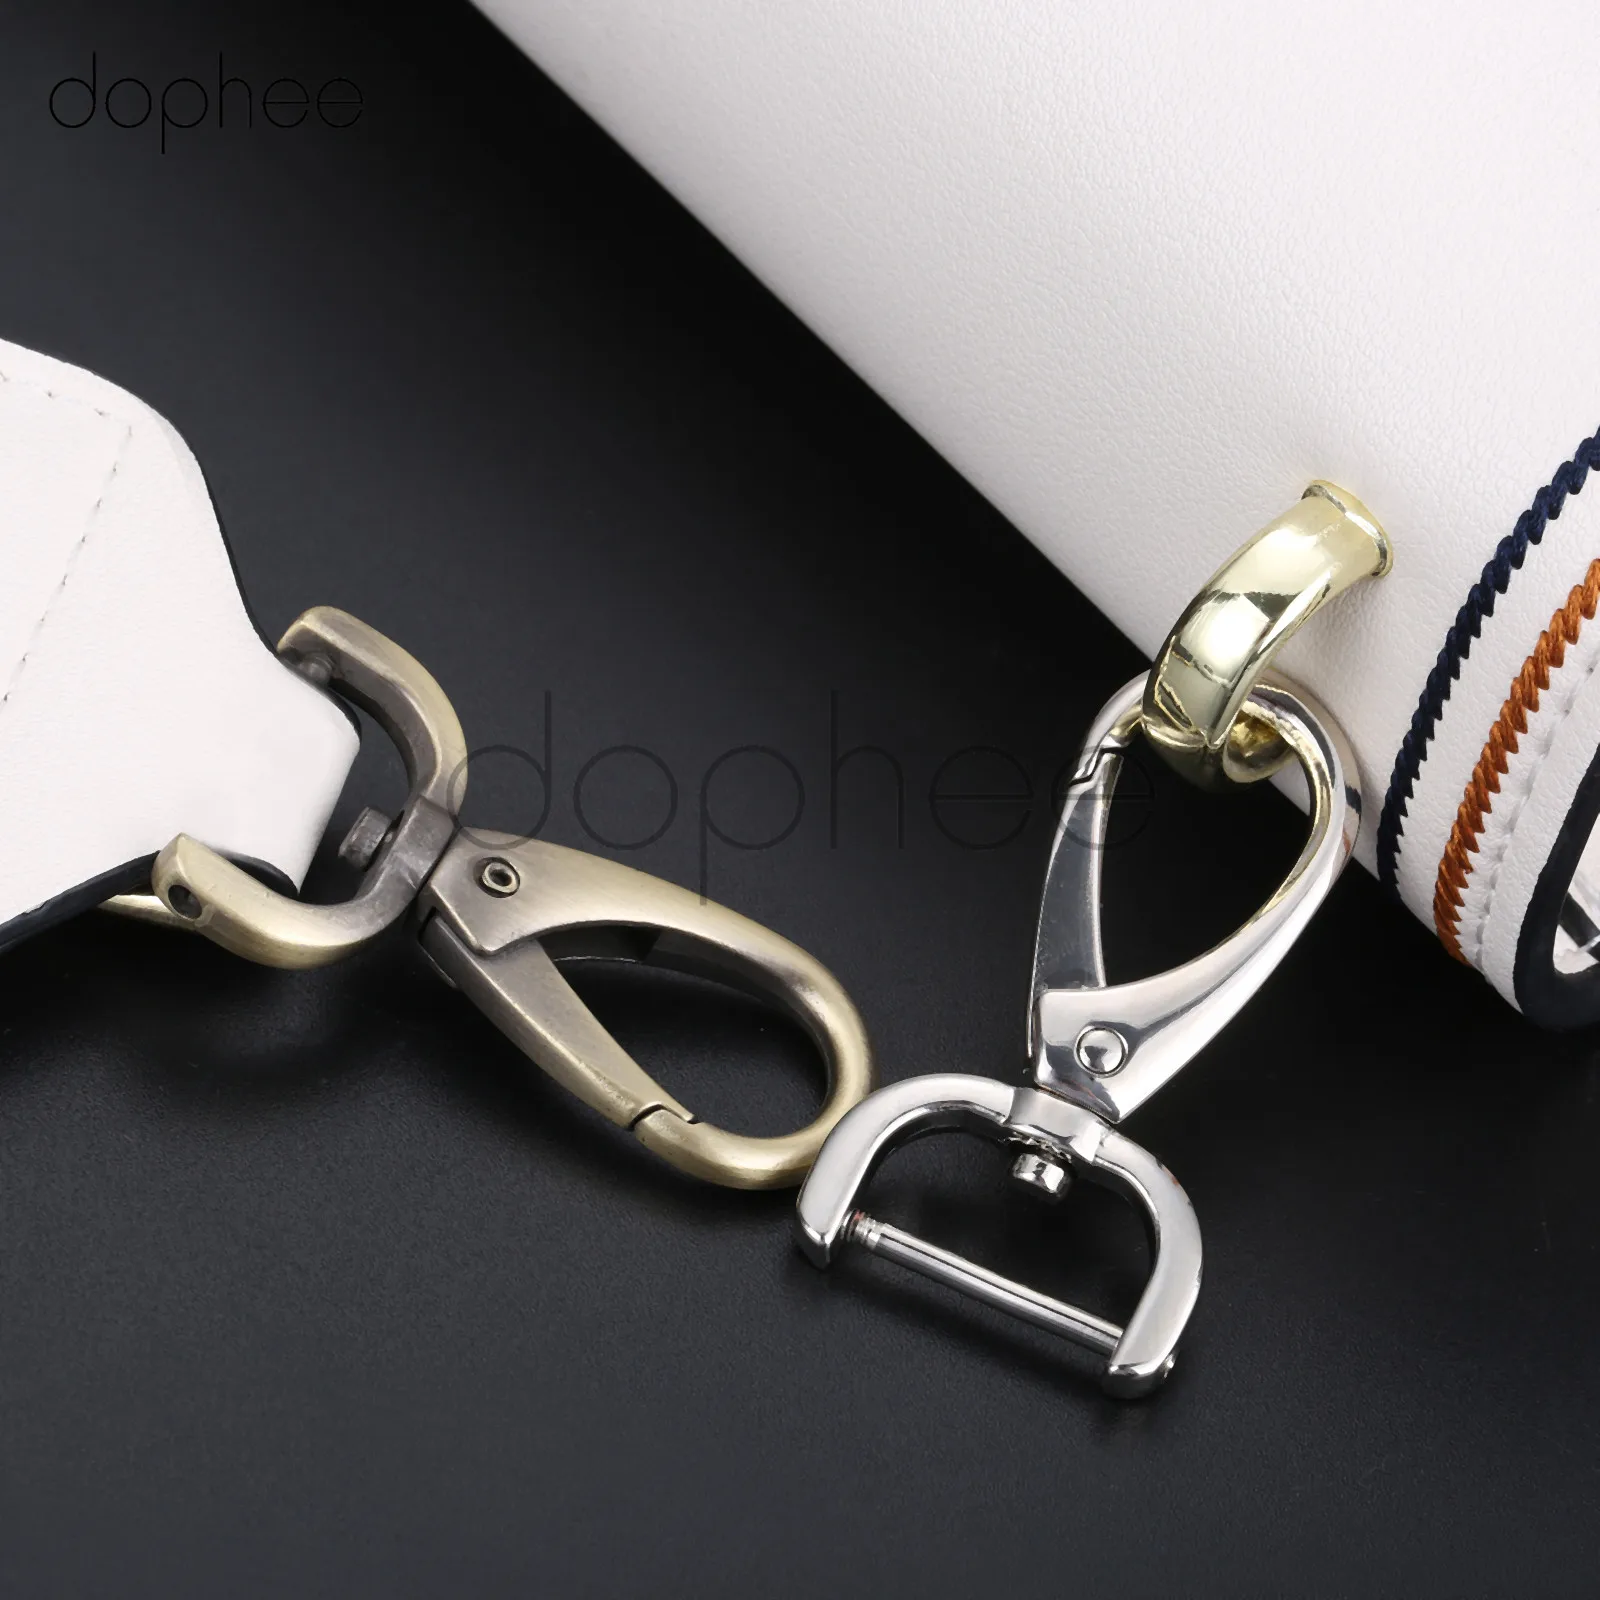 Dophee 1 шт. сумка застежки Поворотный замок-карабин клипса с карабином крюк вытяжной шнур крюк карабин для пряжки